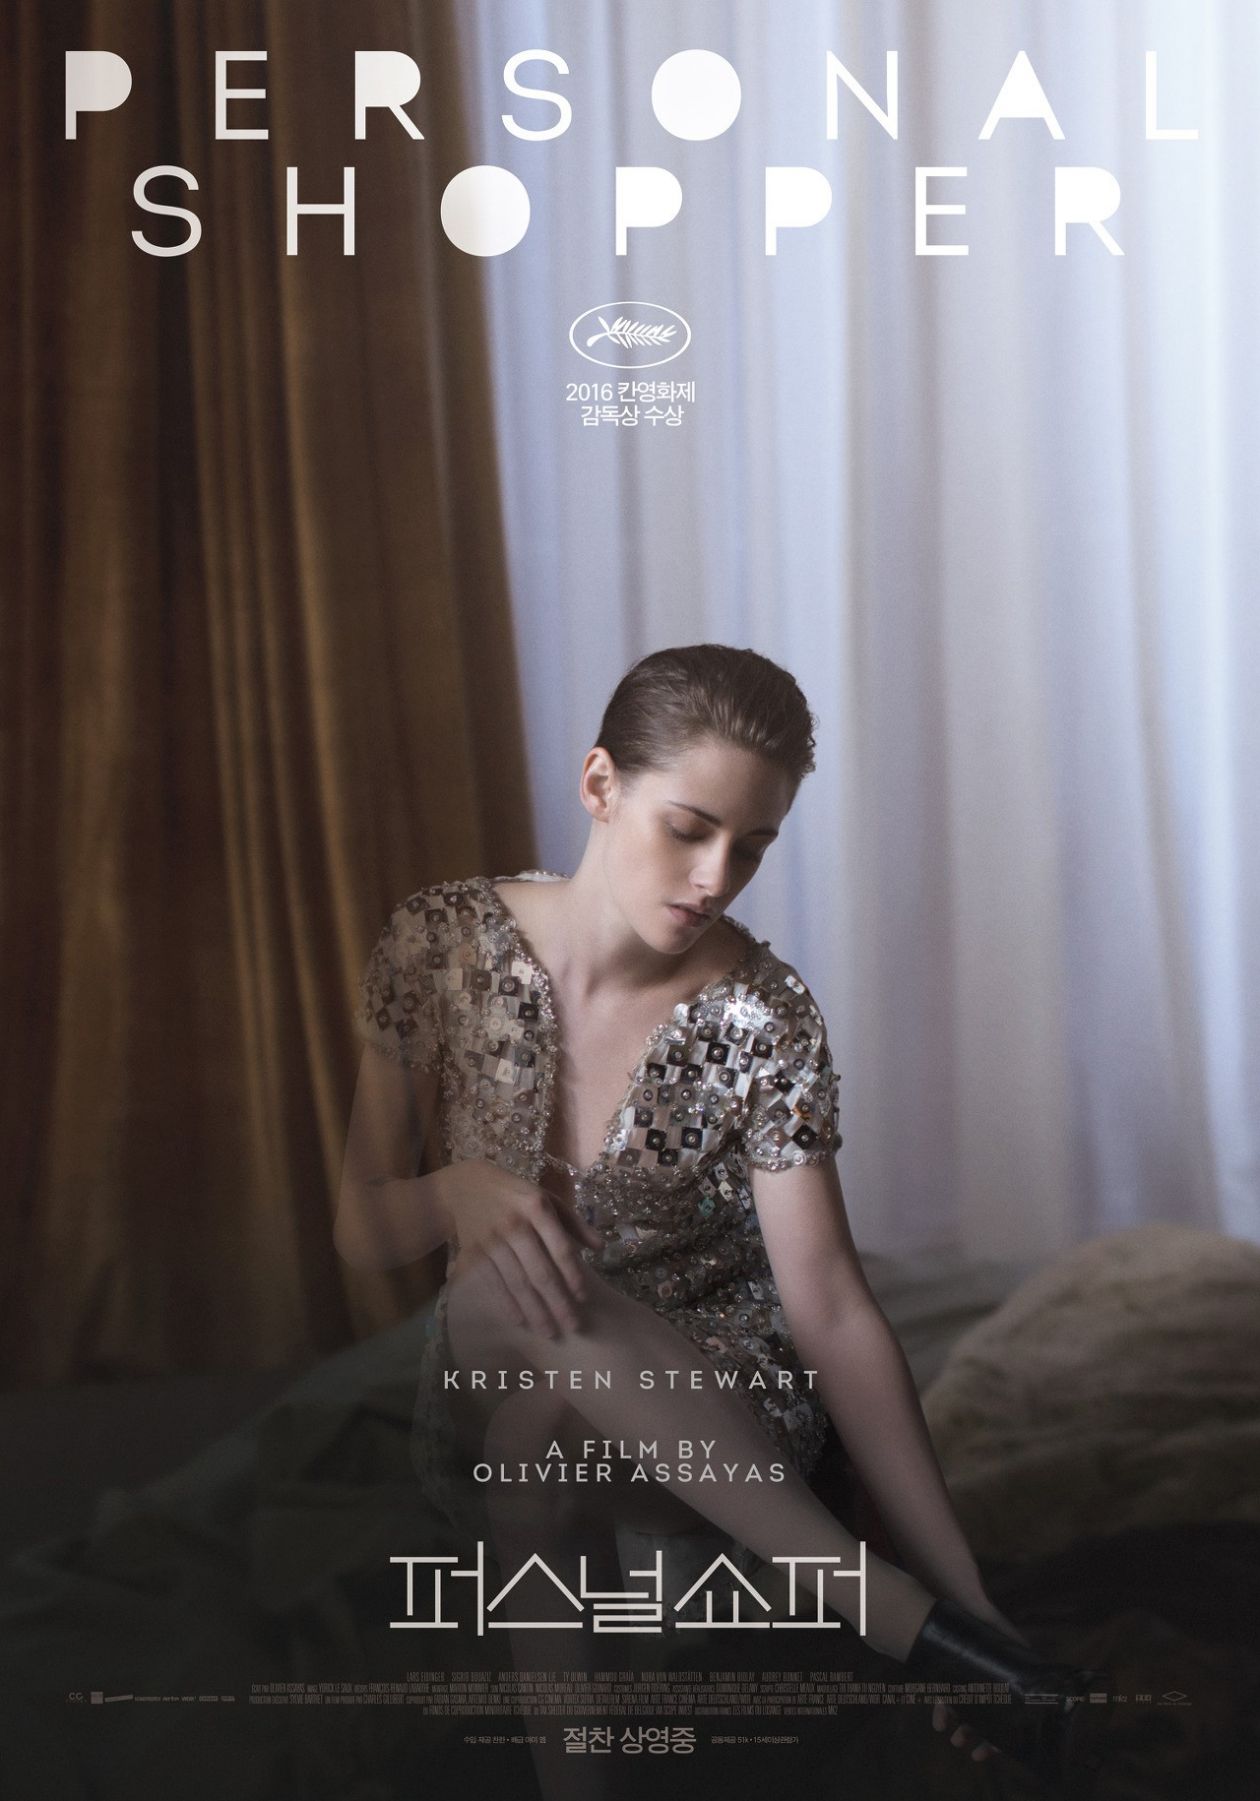 Movie Poster / Affiche du film / Kristen Stewart: Maureen | Personal Shopper | Olivier Assayas, 2016